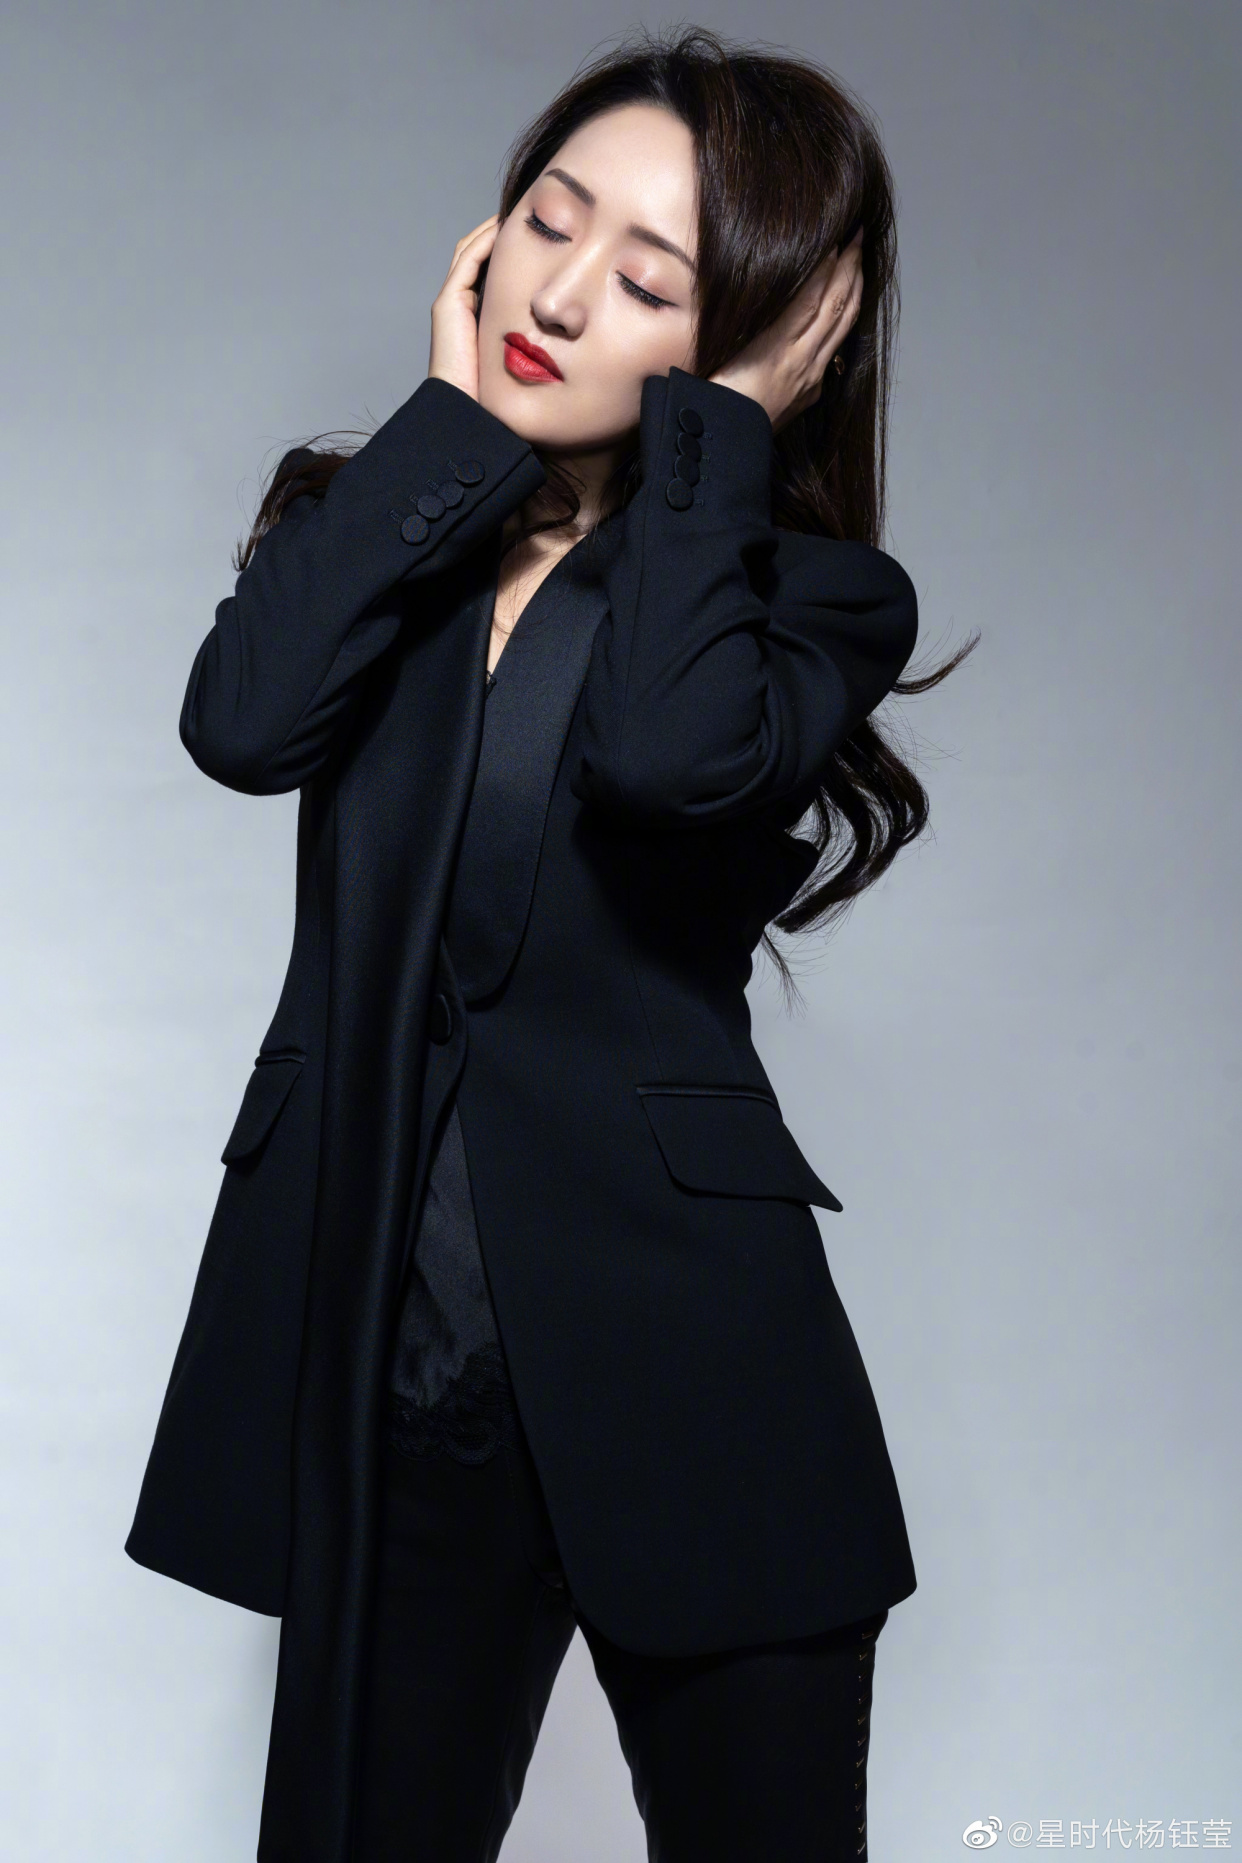 杨钰莹写真,身穿黑色西服,长发披肩,气质优雅,美丽动人